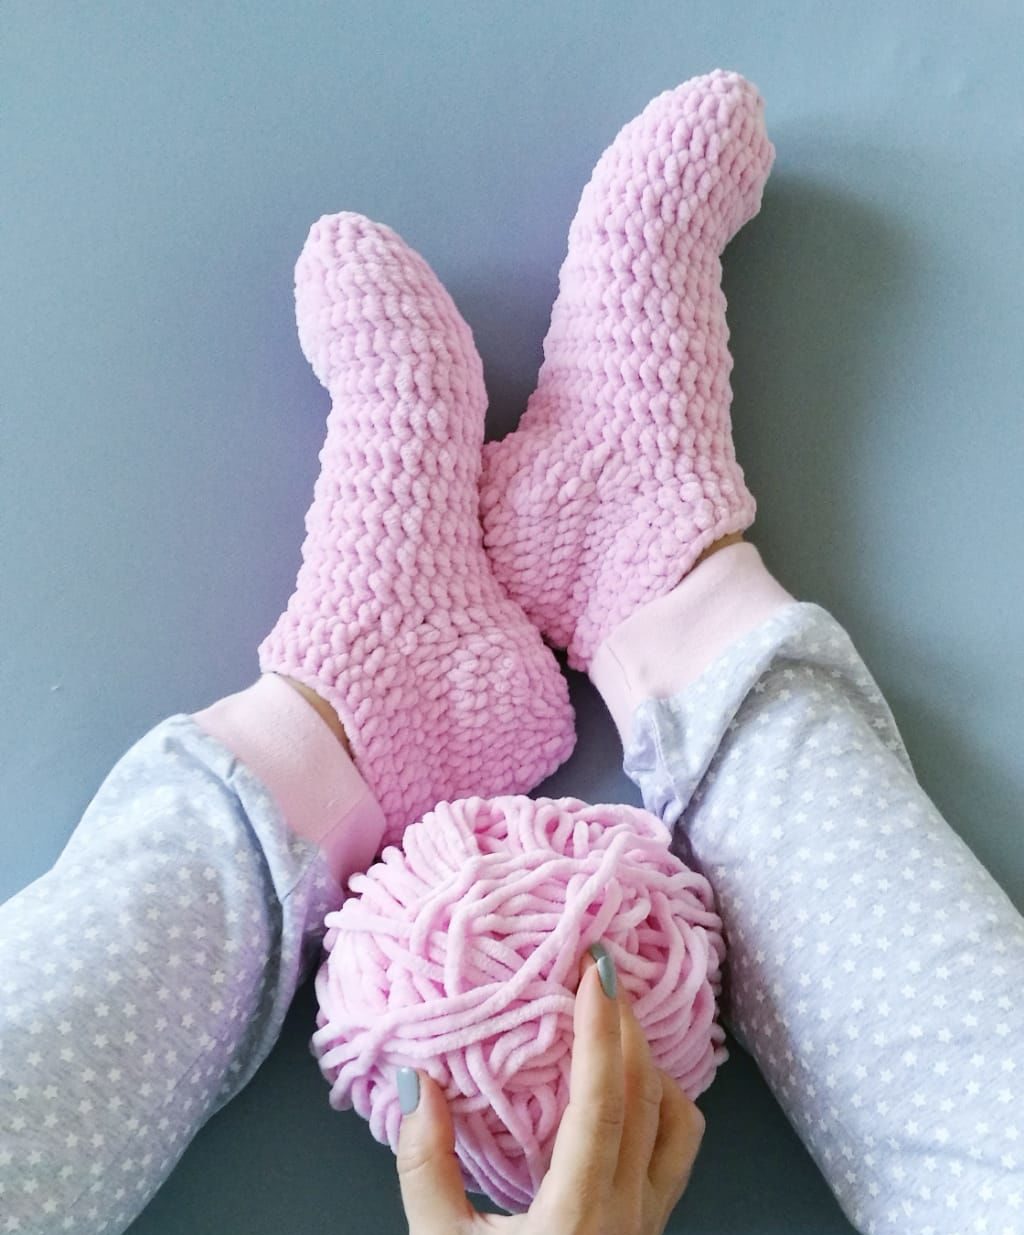 Простой способ связать носки! Вязание спицами.Часть №1.children's socks knitting